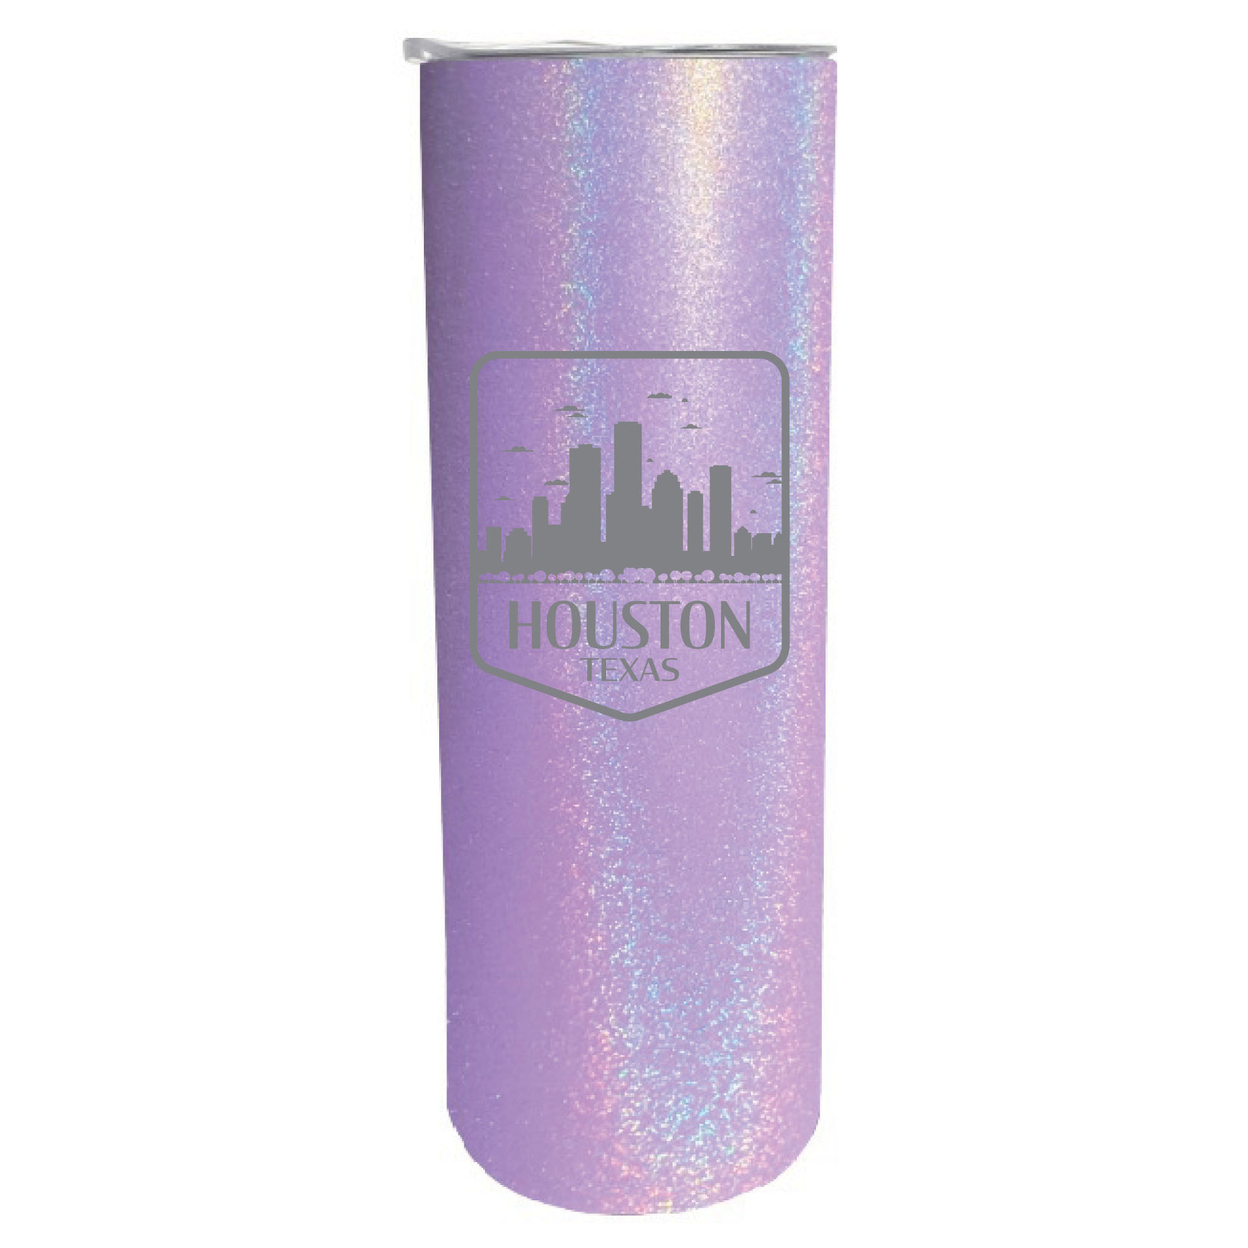 Houston Texas Souvenir 20 Oz Engraved Insulated Stainless Steel Skinny Tumbler - Black Glitter,,2-Pack